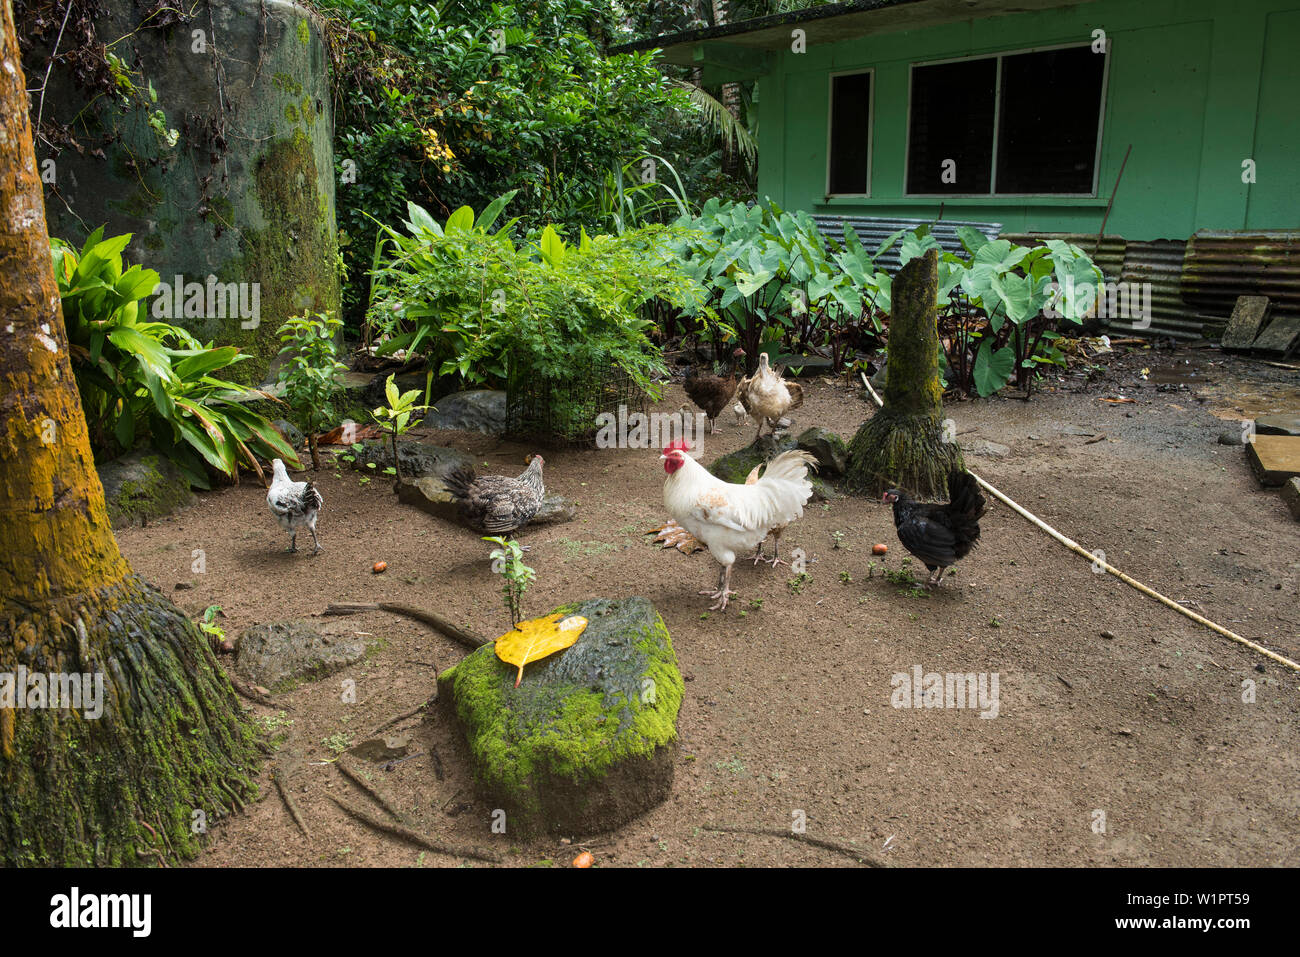 Los pollos se alimentan en el patio de una casa verde, rodeado de una exuberante vegetación, la isla de Pohnpei, Pohnpei, Estados Federados de Micronesia, Pacífico Sur Foto de stock